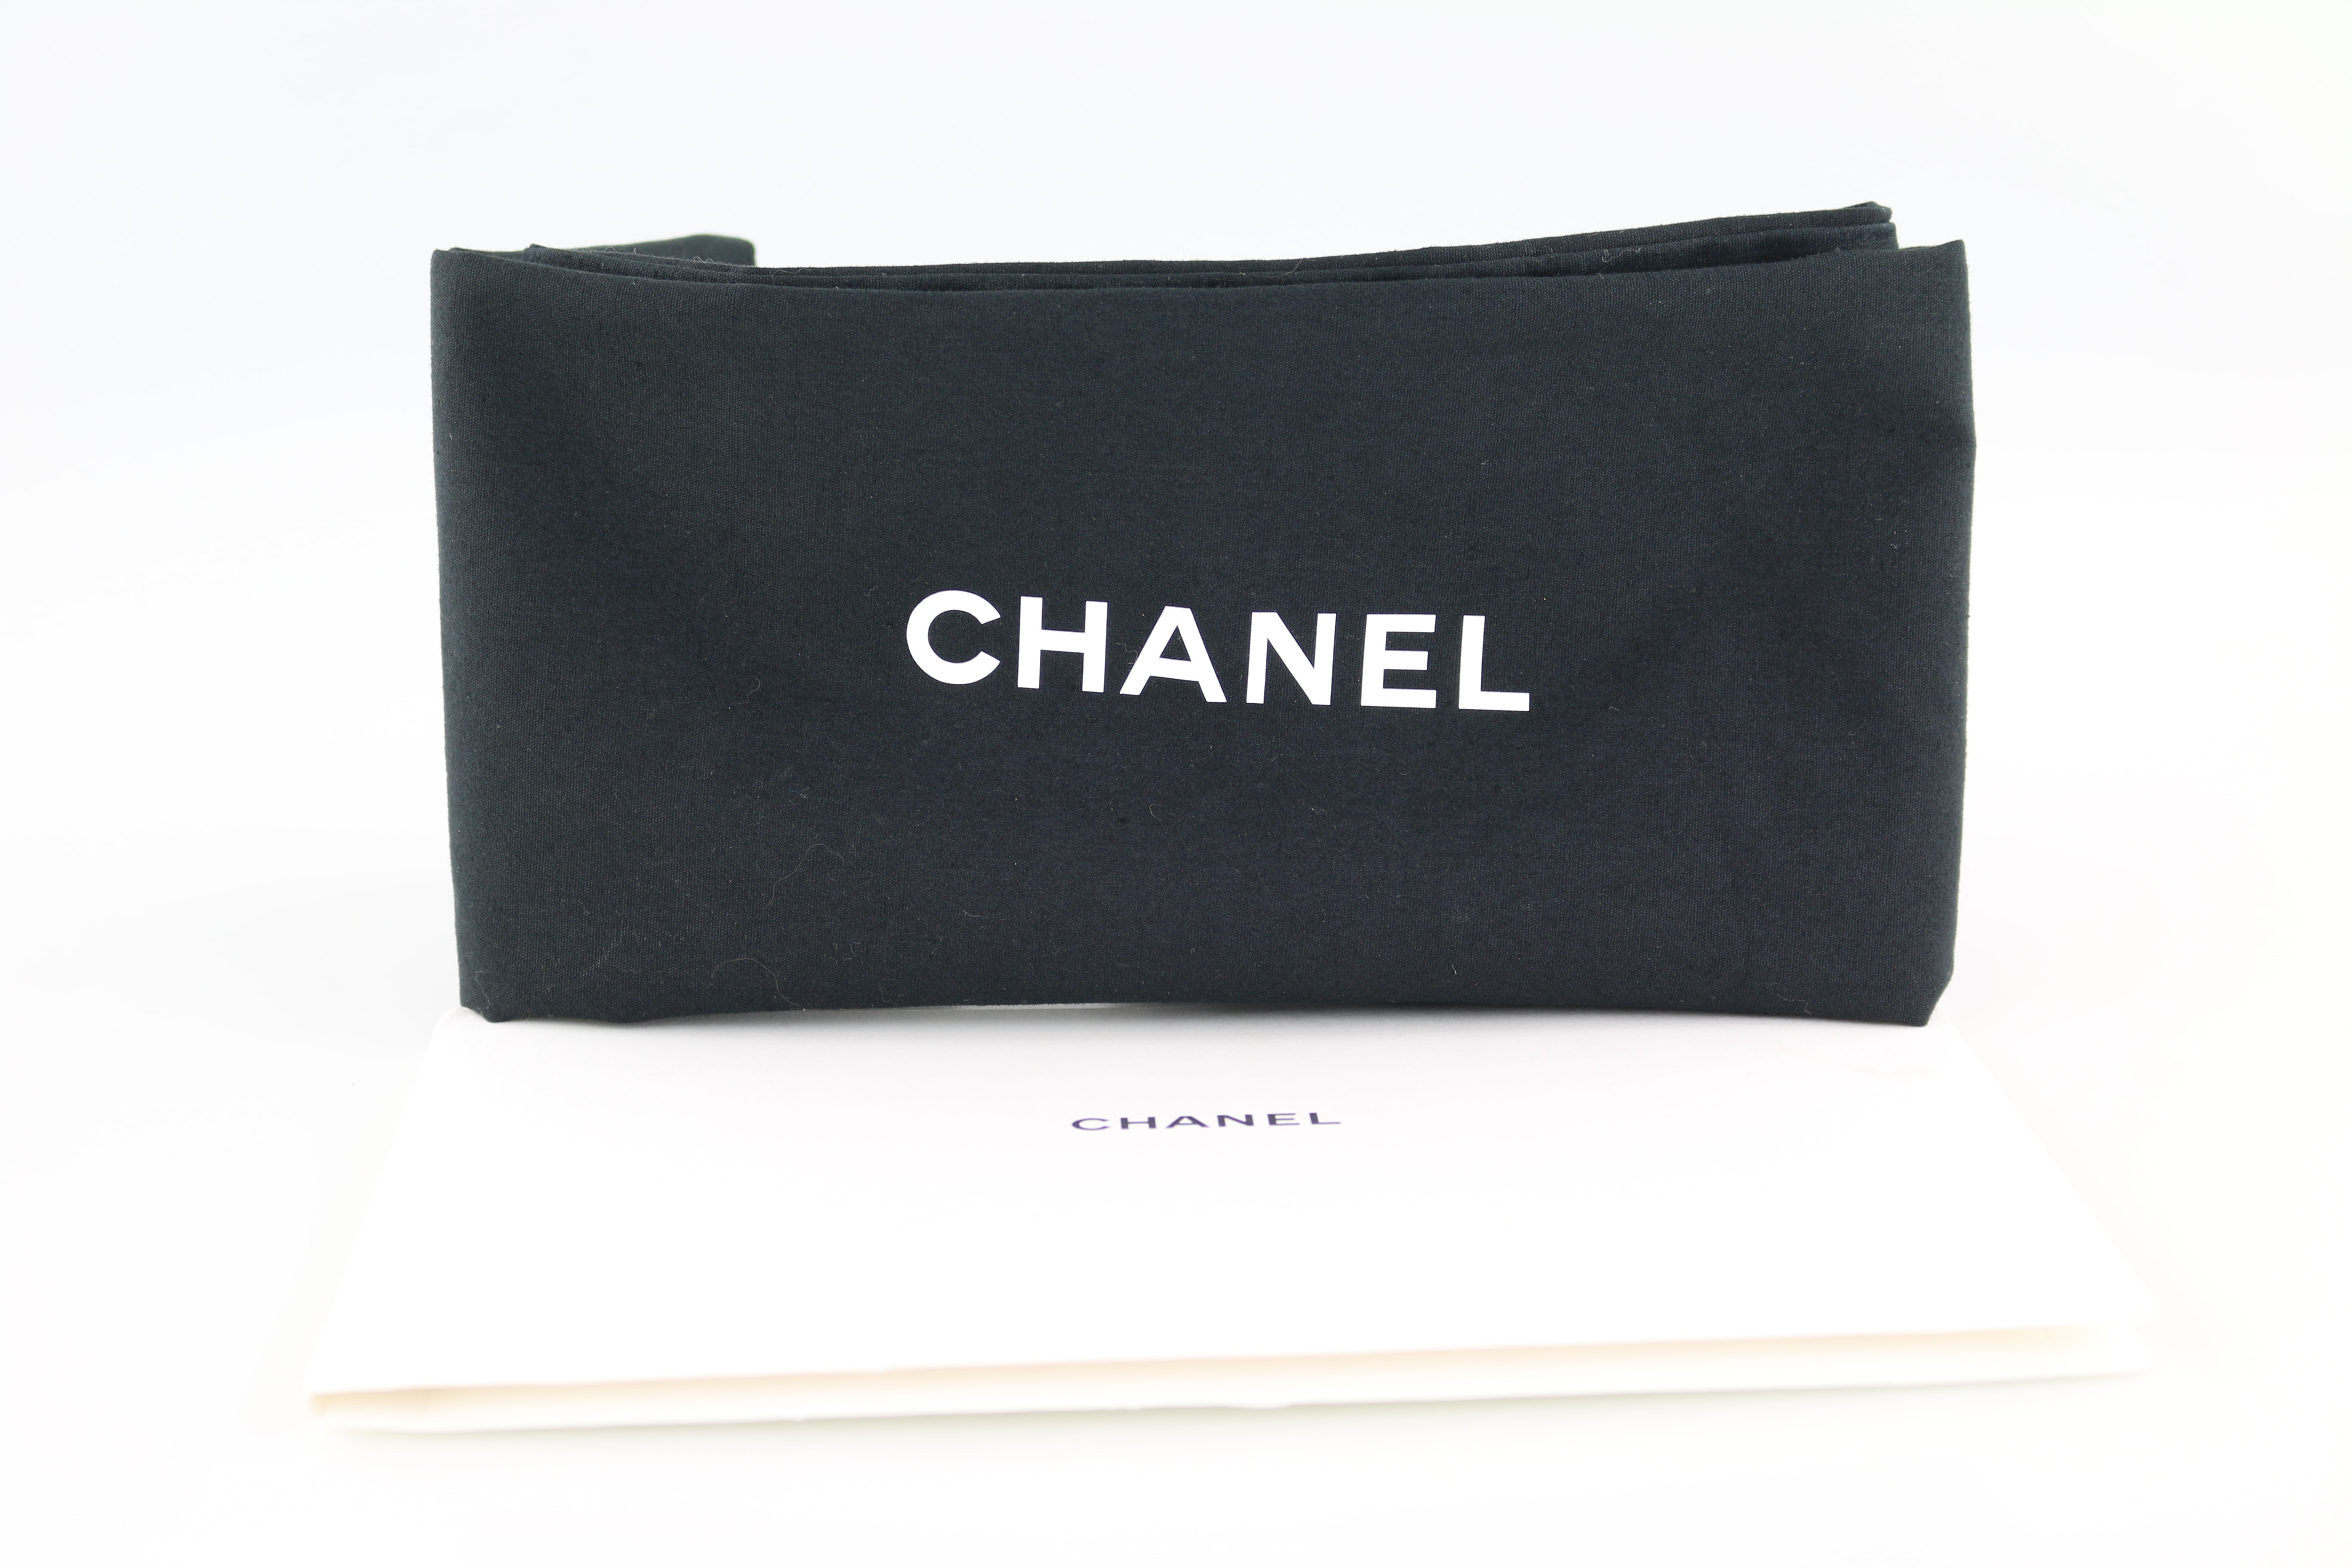 Chanel Gabrielle Medium Chevron - Designer WishBags